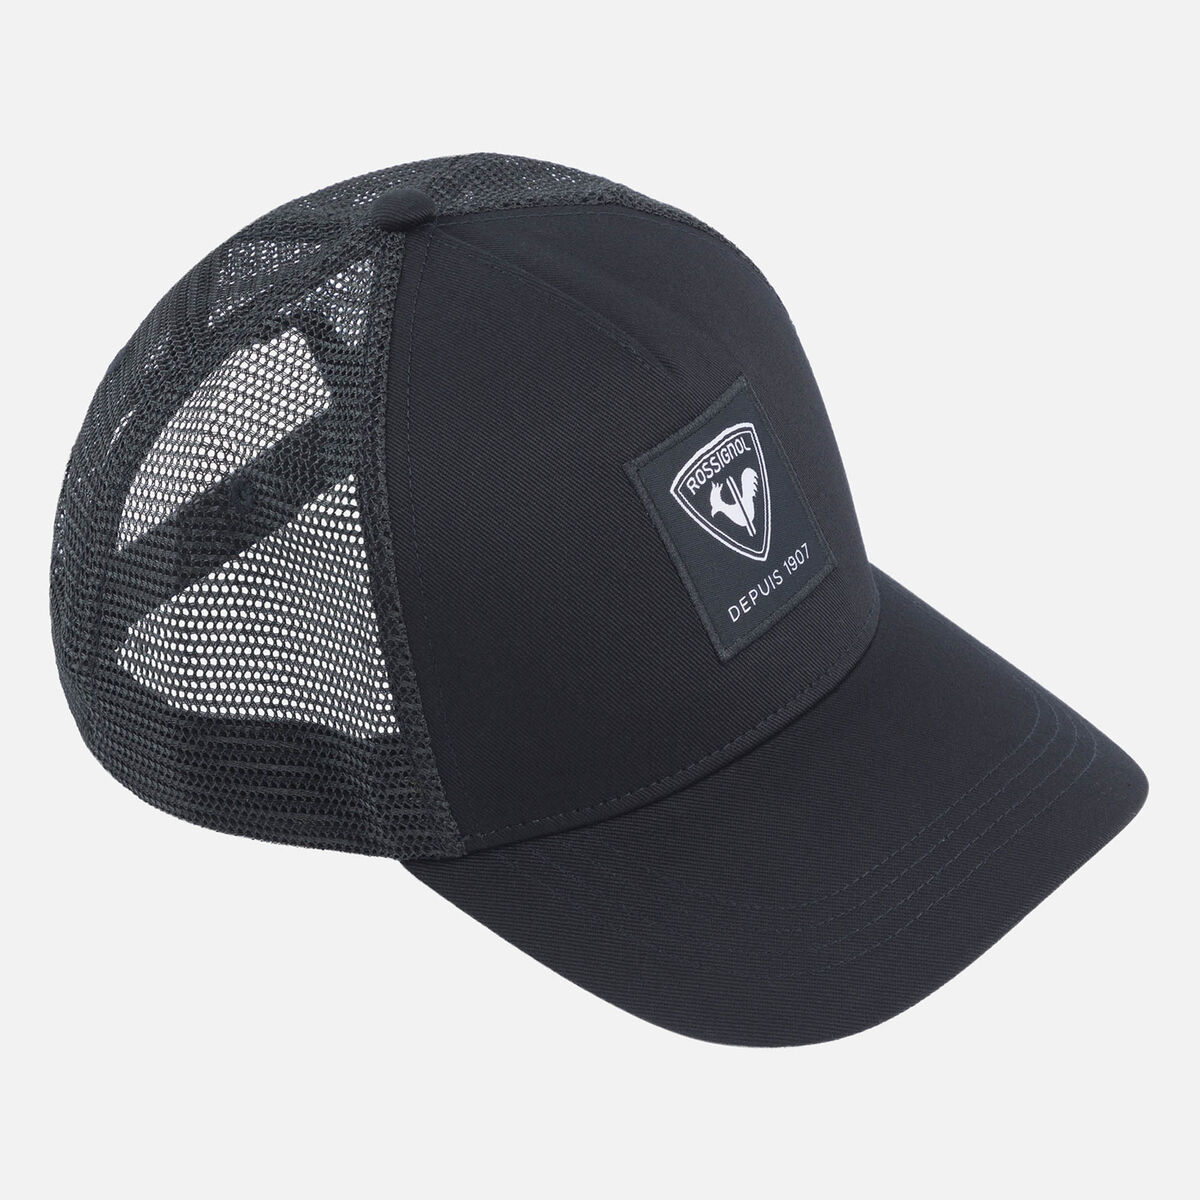 Rossignol Unisex corporate mesh cap black